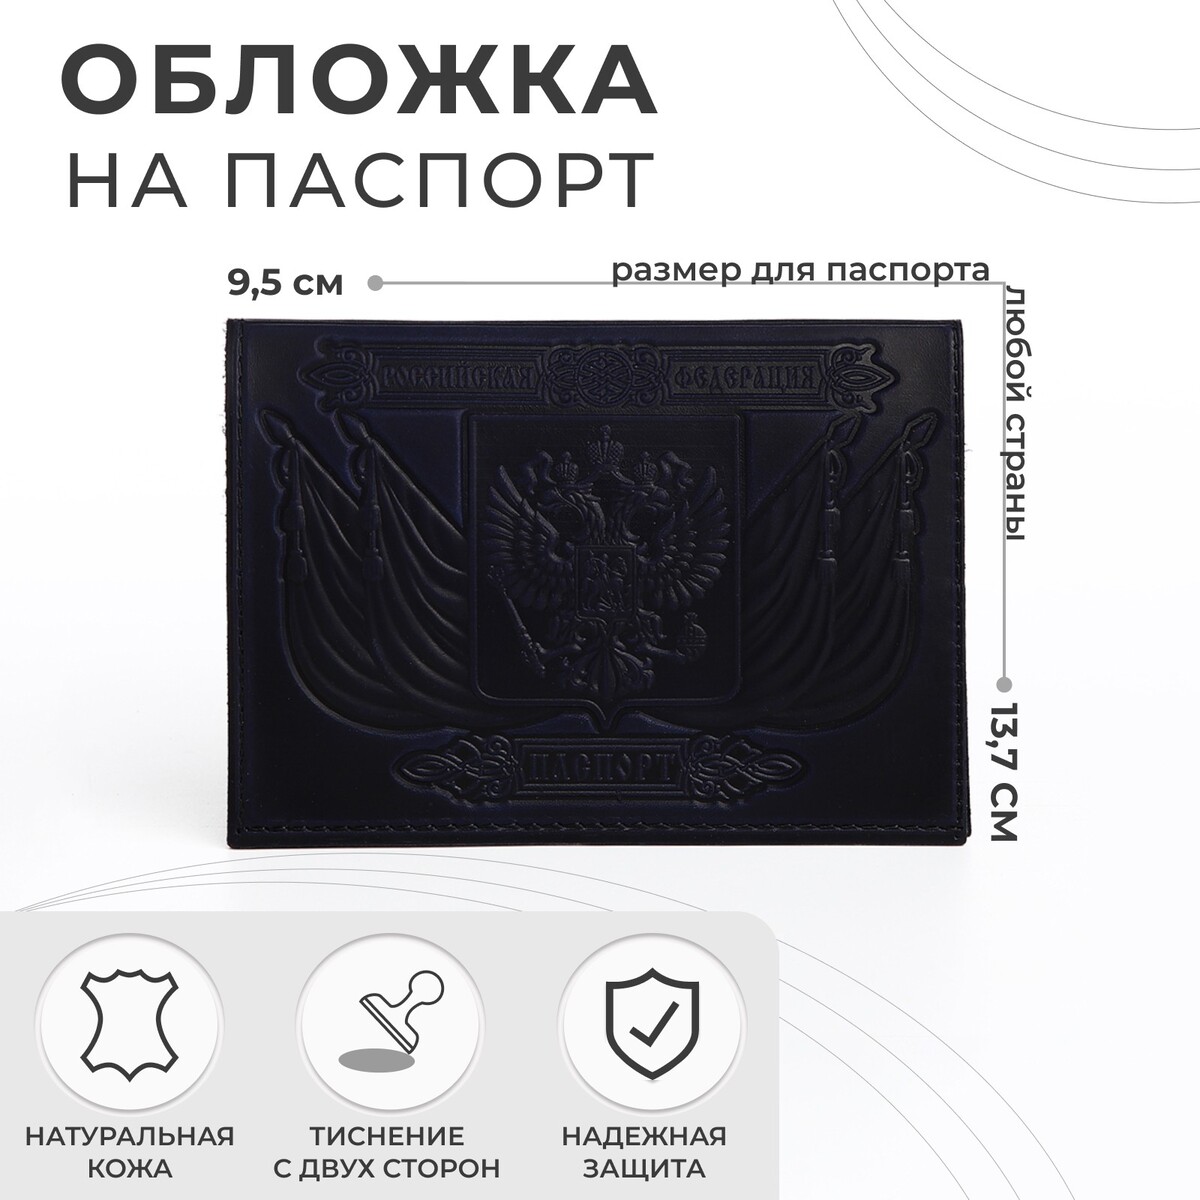 Обложка для паспорта, тиснение, герб, цвет темно-синий обложка для паспорта тиснение